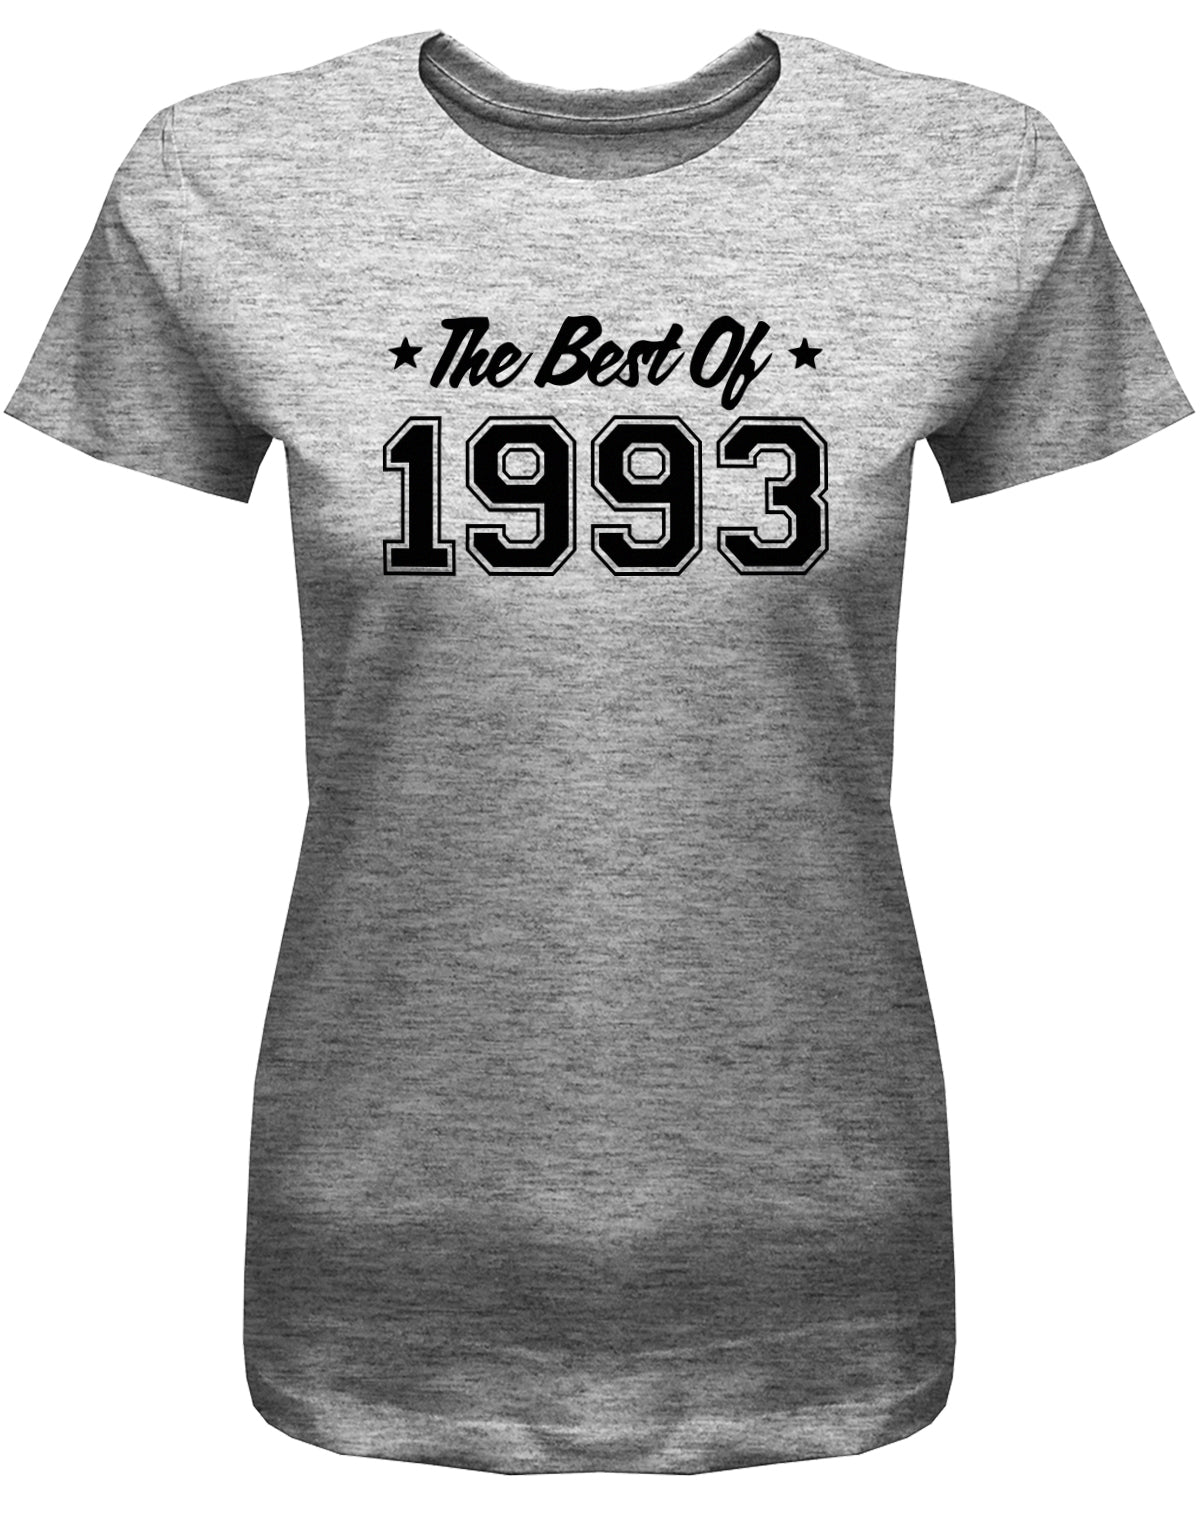 Lustiges T-Shirt zum 30. Geburtstag für die Frau Bedruckt mit: The best of 1993 ✓ Geschenk zum 30 geburtstag Frau ✓ 1993 geburtstag Frau ✓ 30 Geburtstag tshirt ✓ shirt geburtstag 30 Grau